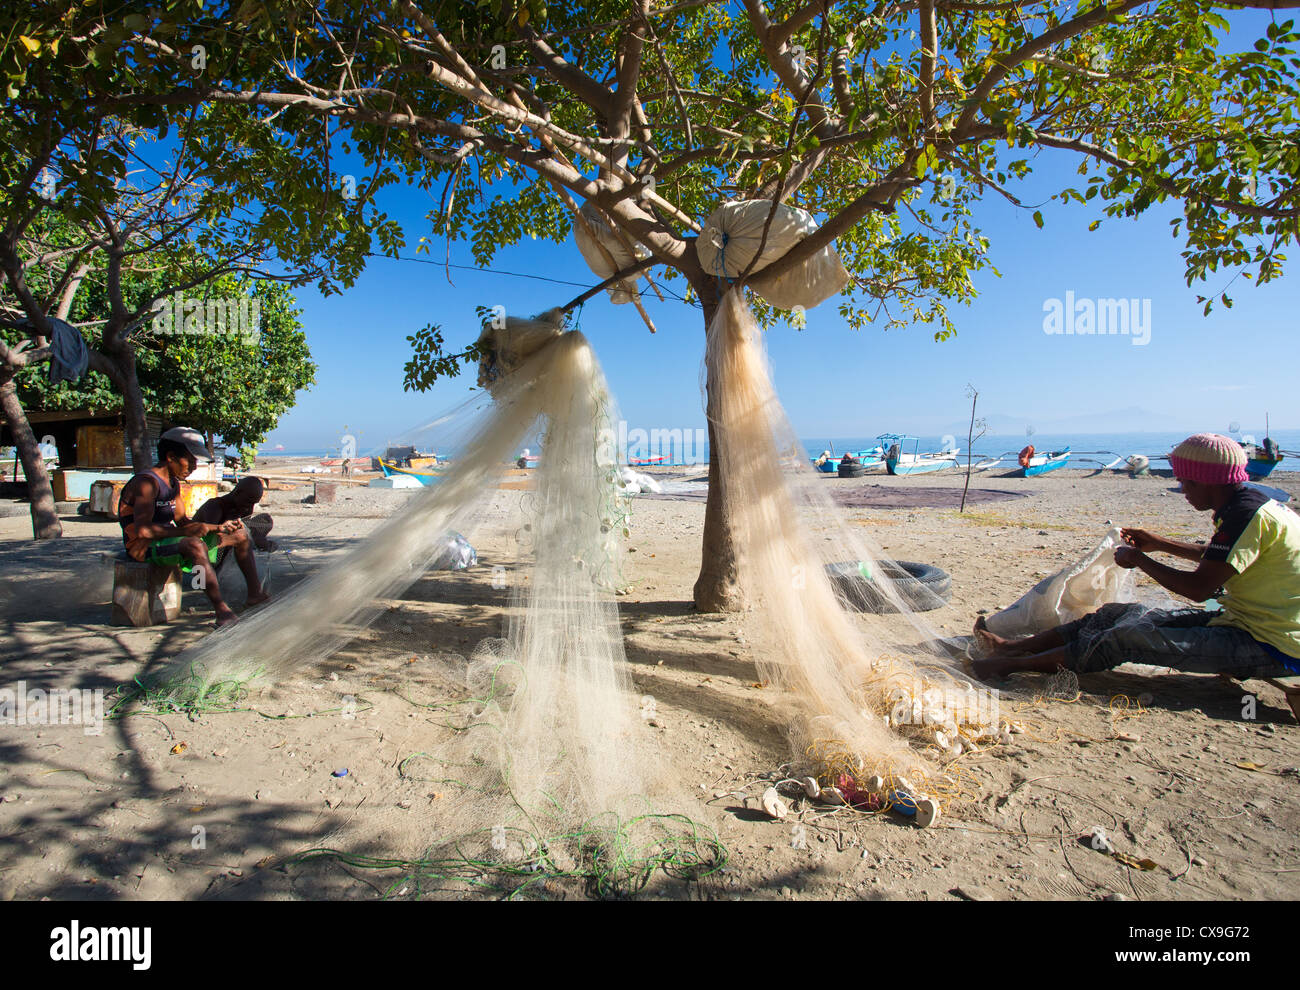 Les hommes réparant leurs filets de pêche sur une plage, à Dili, au Timor oriental Banque D'Images